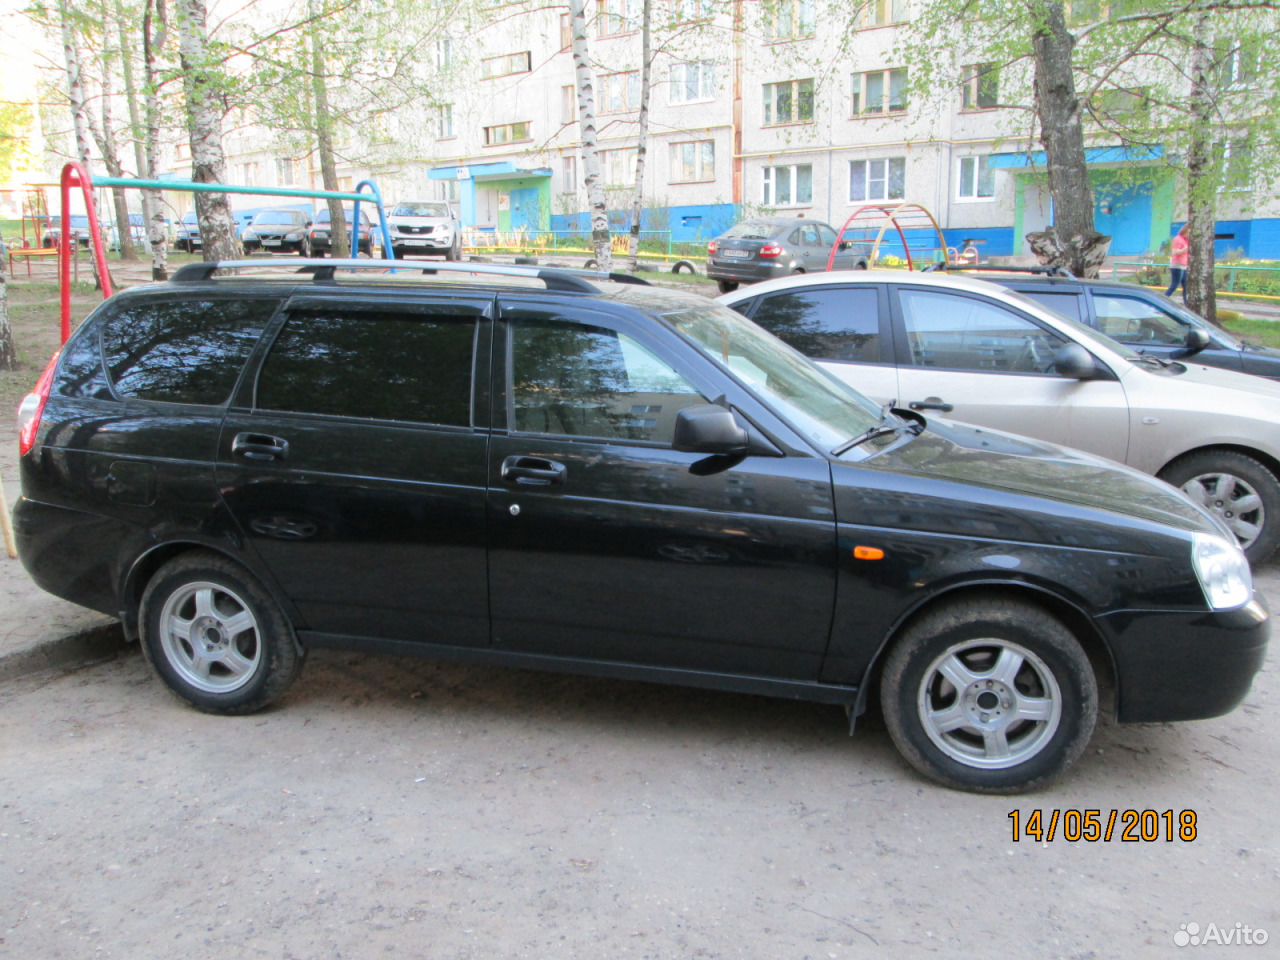 Машина Приора черная в Чебоксарах с номерами. Авито чебоксары часы